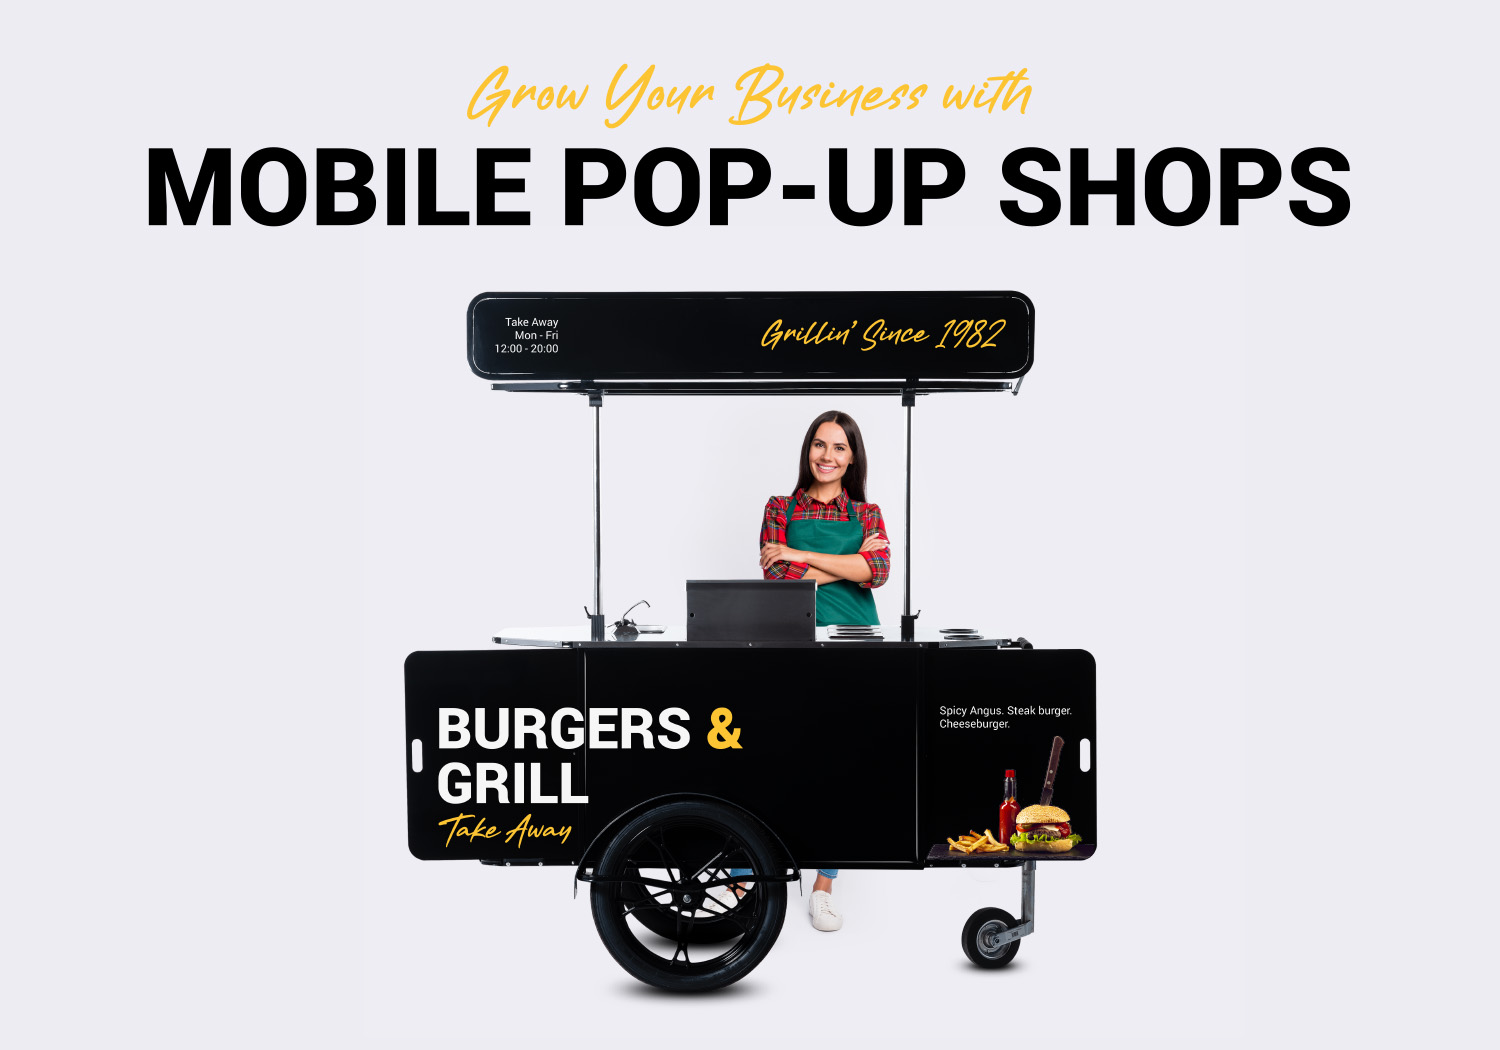 Mobile Pop-Up Shop Vehicles, ALT TERRAIN